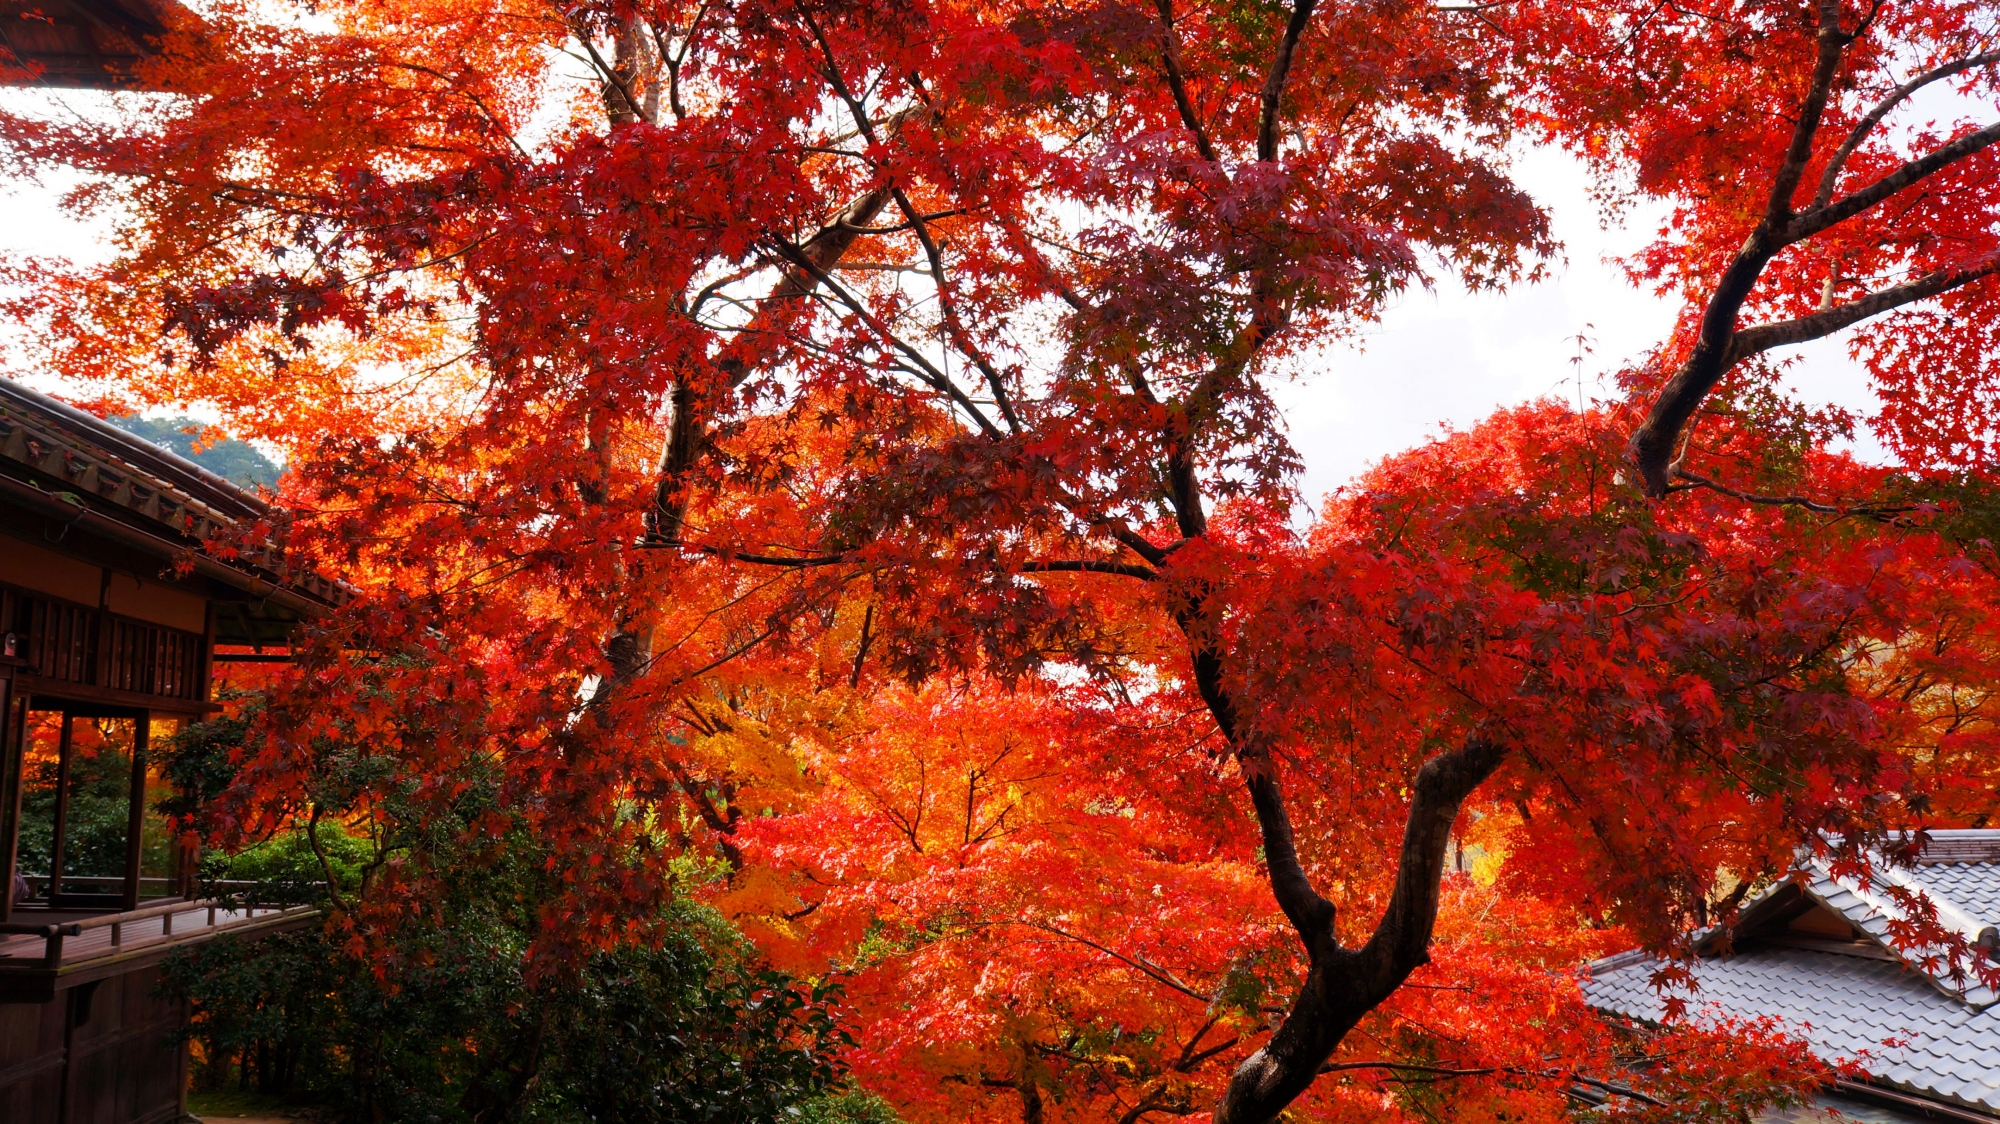 臥龍の庭を覆う鮮やかな赤い紅葉